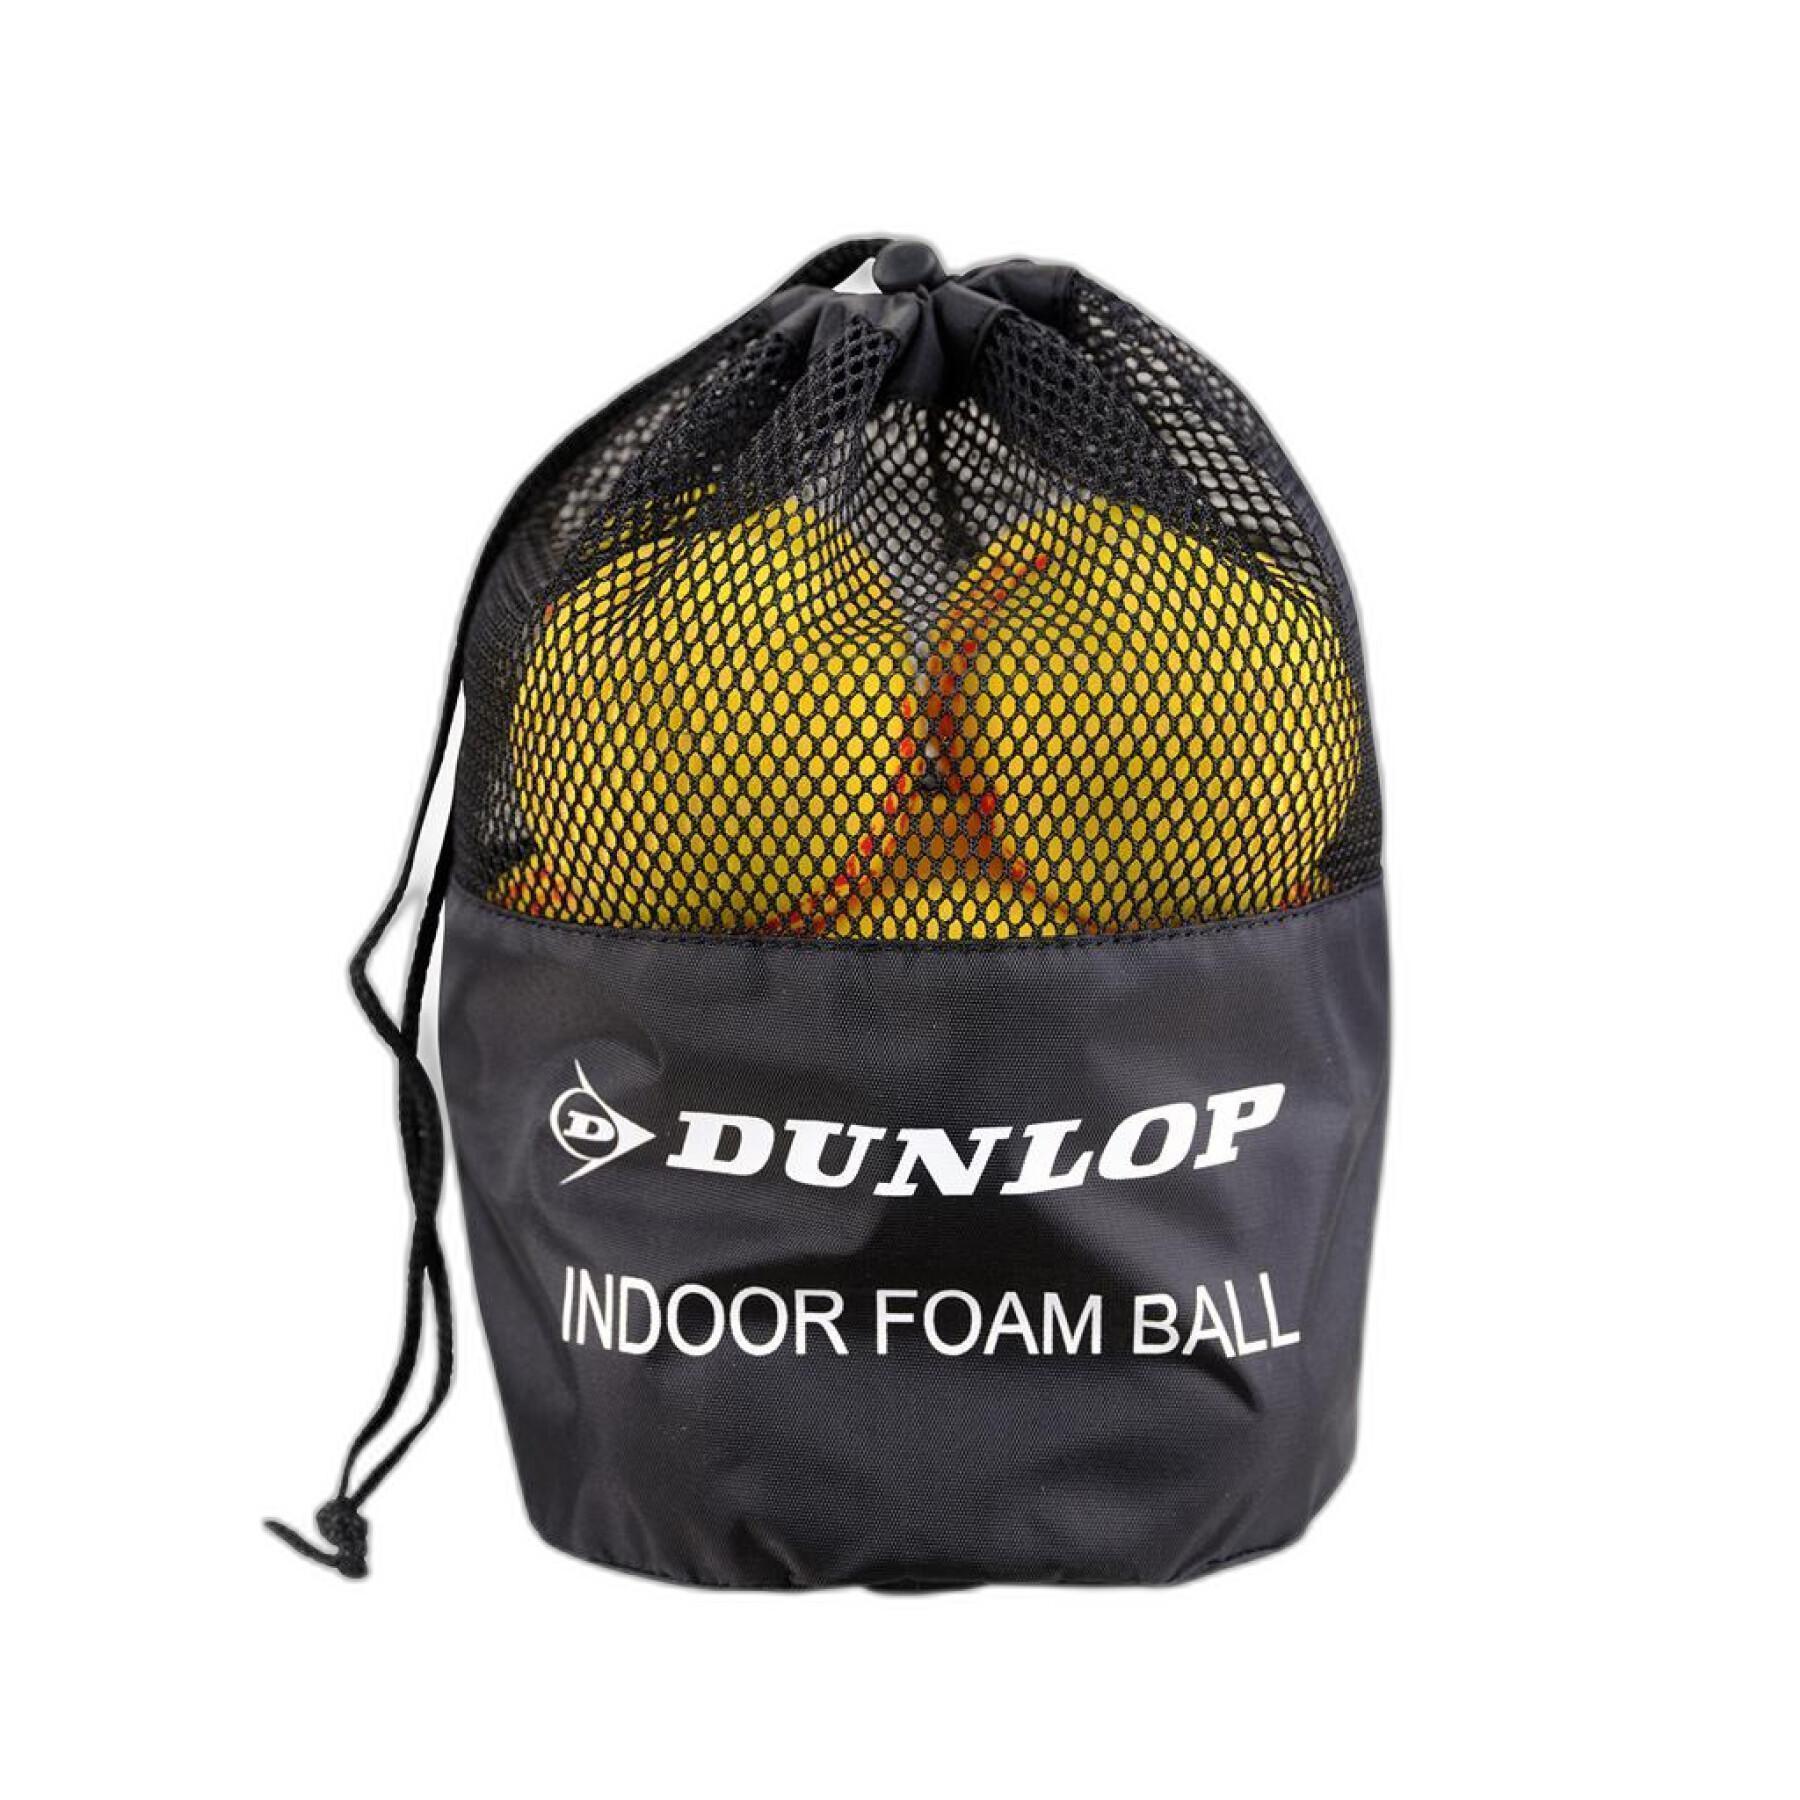 Pakje met 12 tennisballen Dunlop Indoor Foam